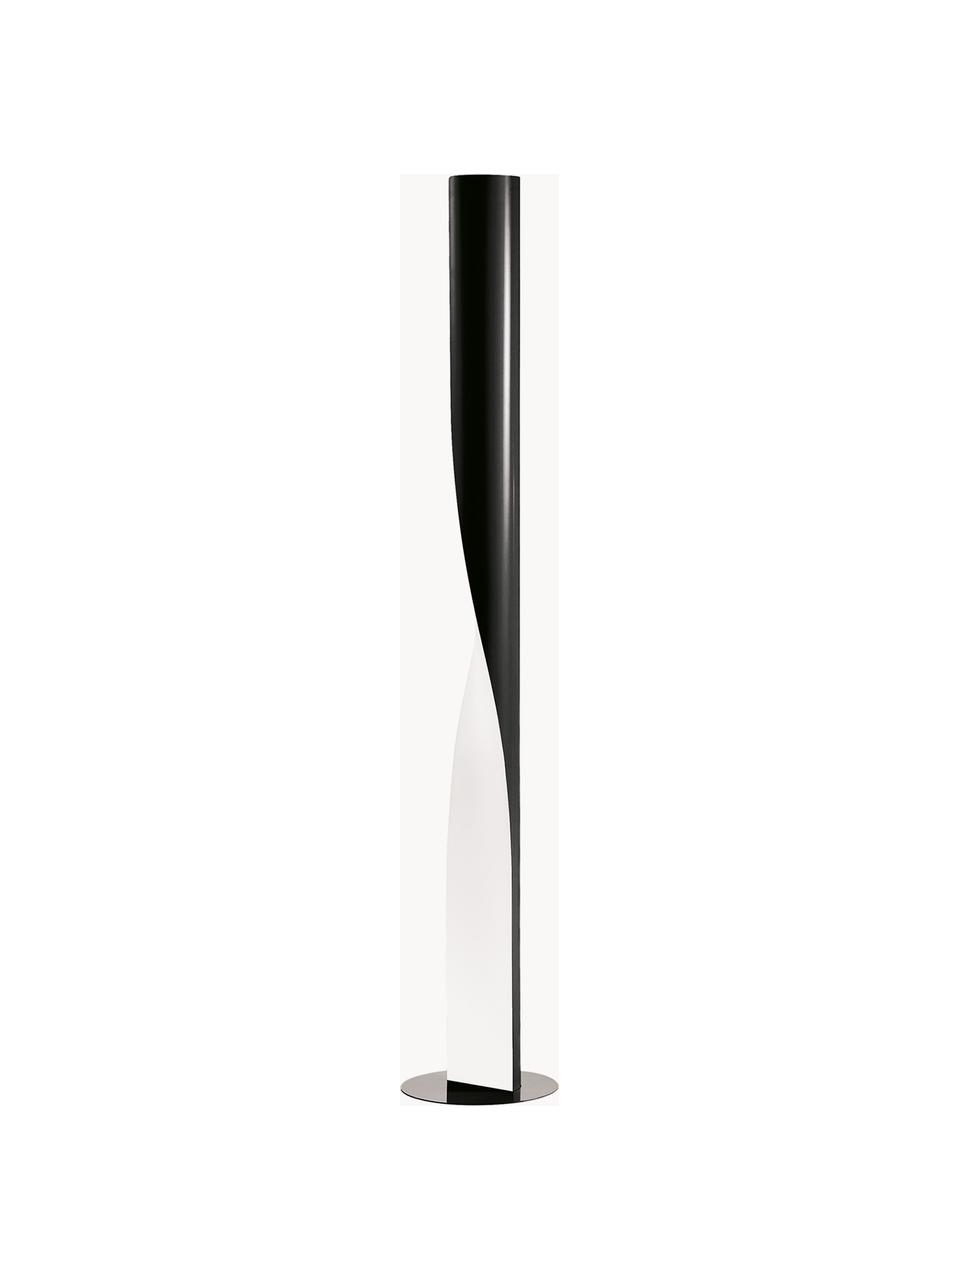 Lámpara de pie grande regulable Evita, Estructura: tecnopolímero, metal recu, Cable: plástico, Negro, Al 190 cm